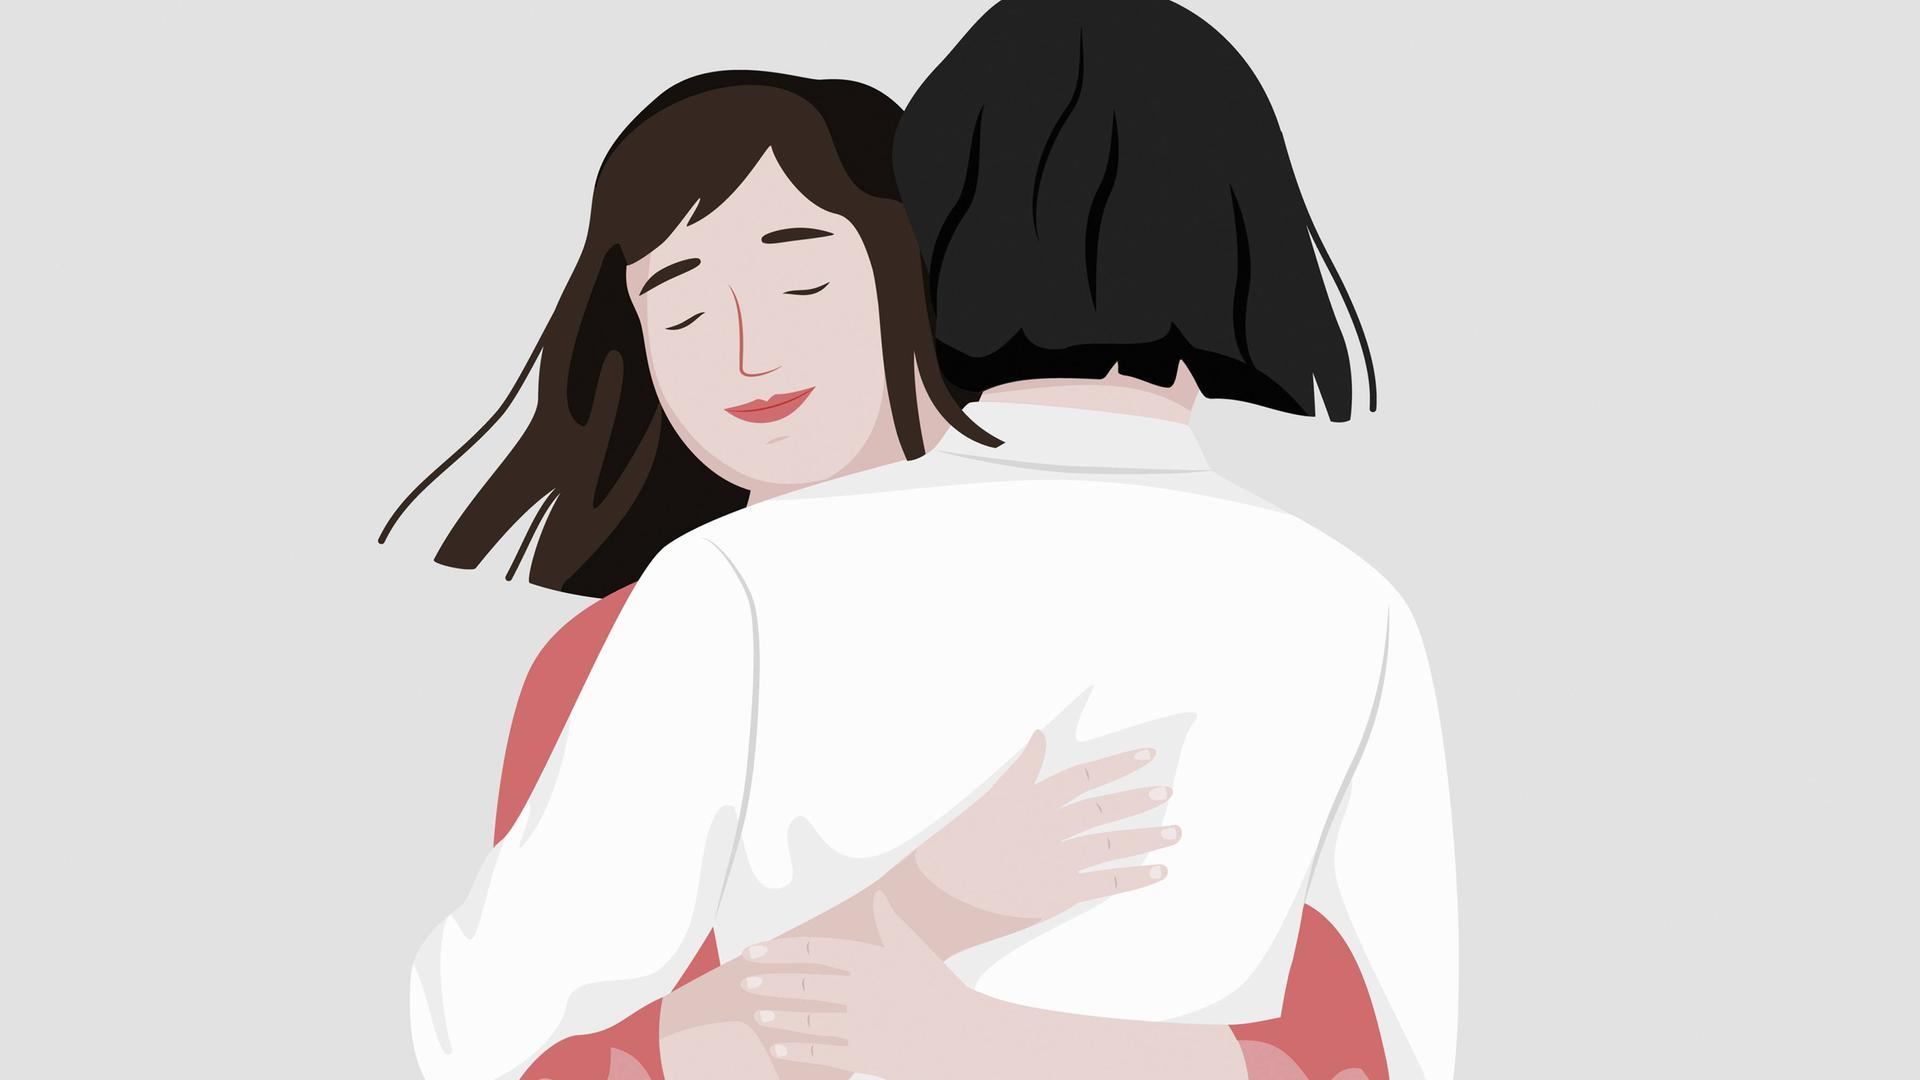 Illustration zweier junger Frauen, die sich umarmen. Eine von ihnen hat ihre Augen geschlossen.